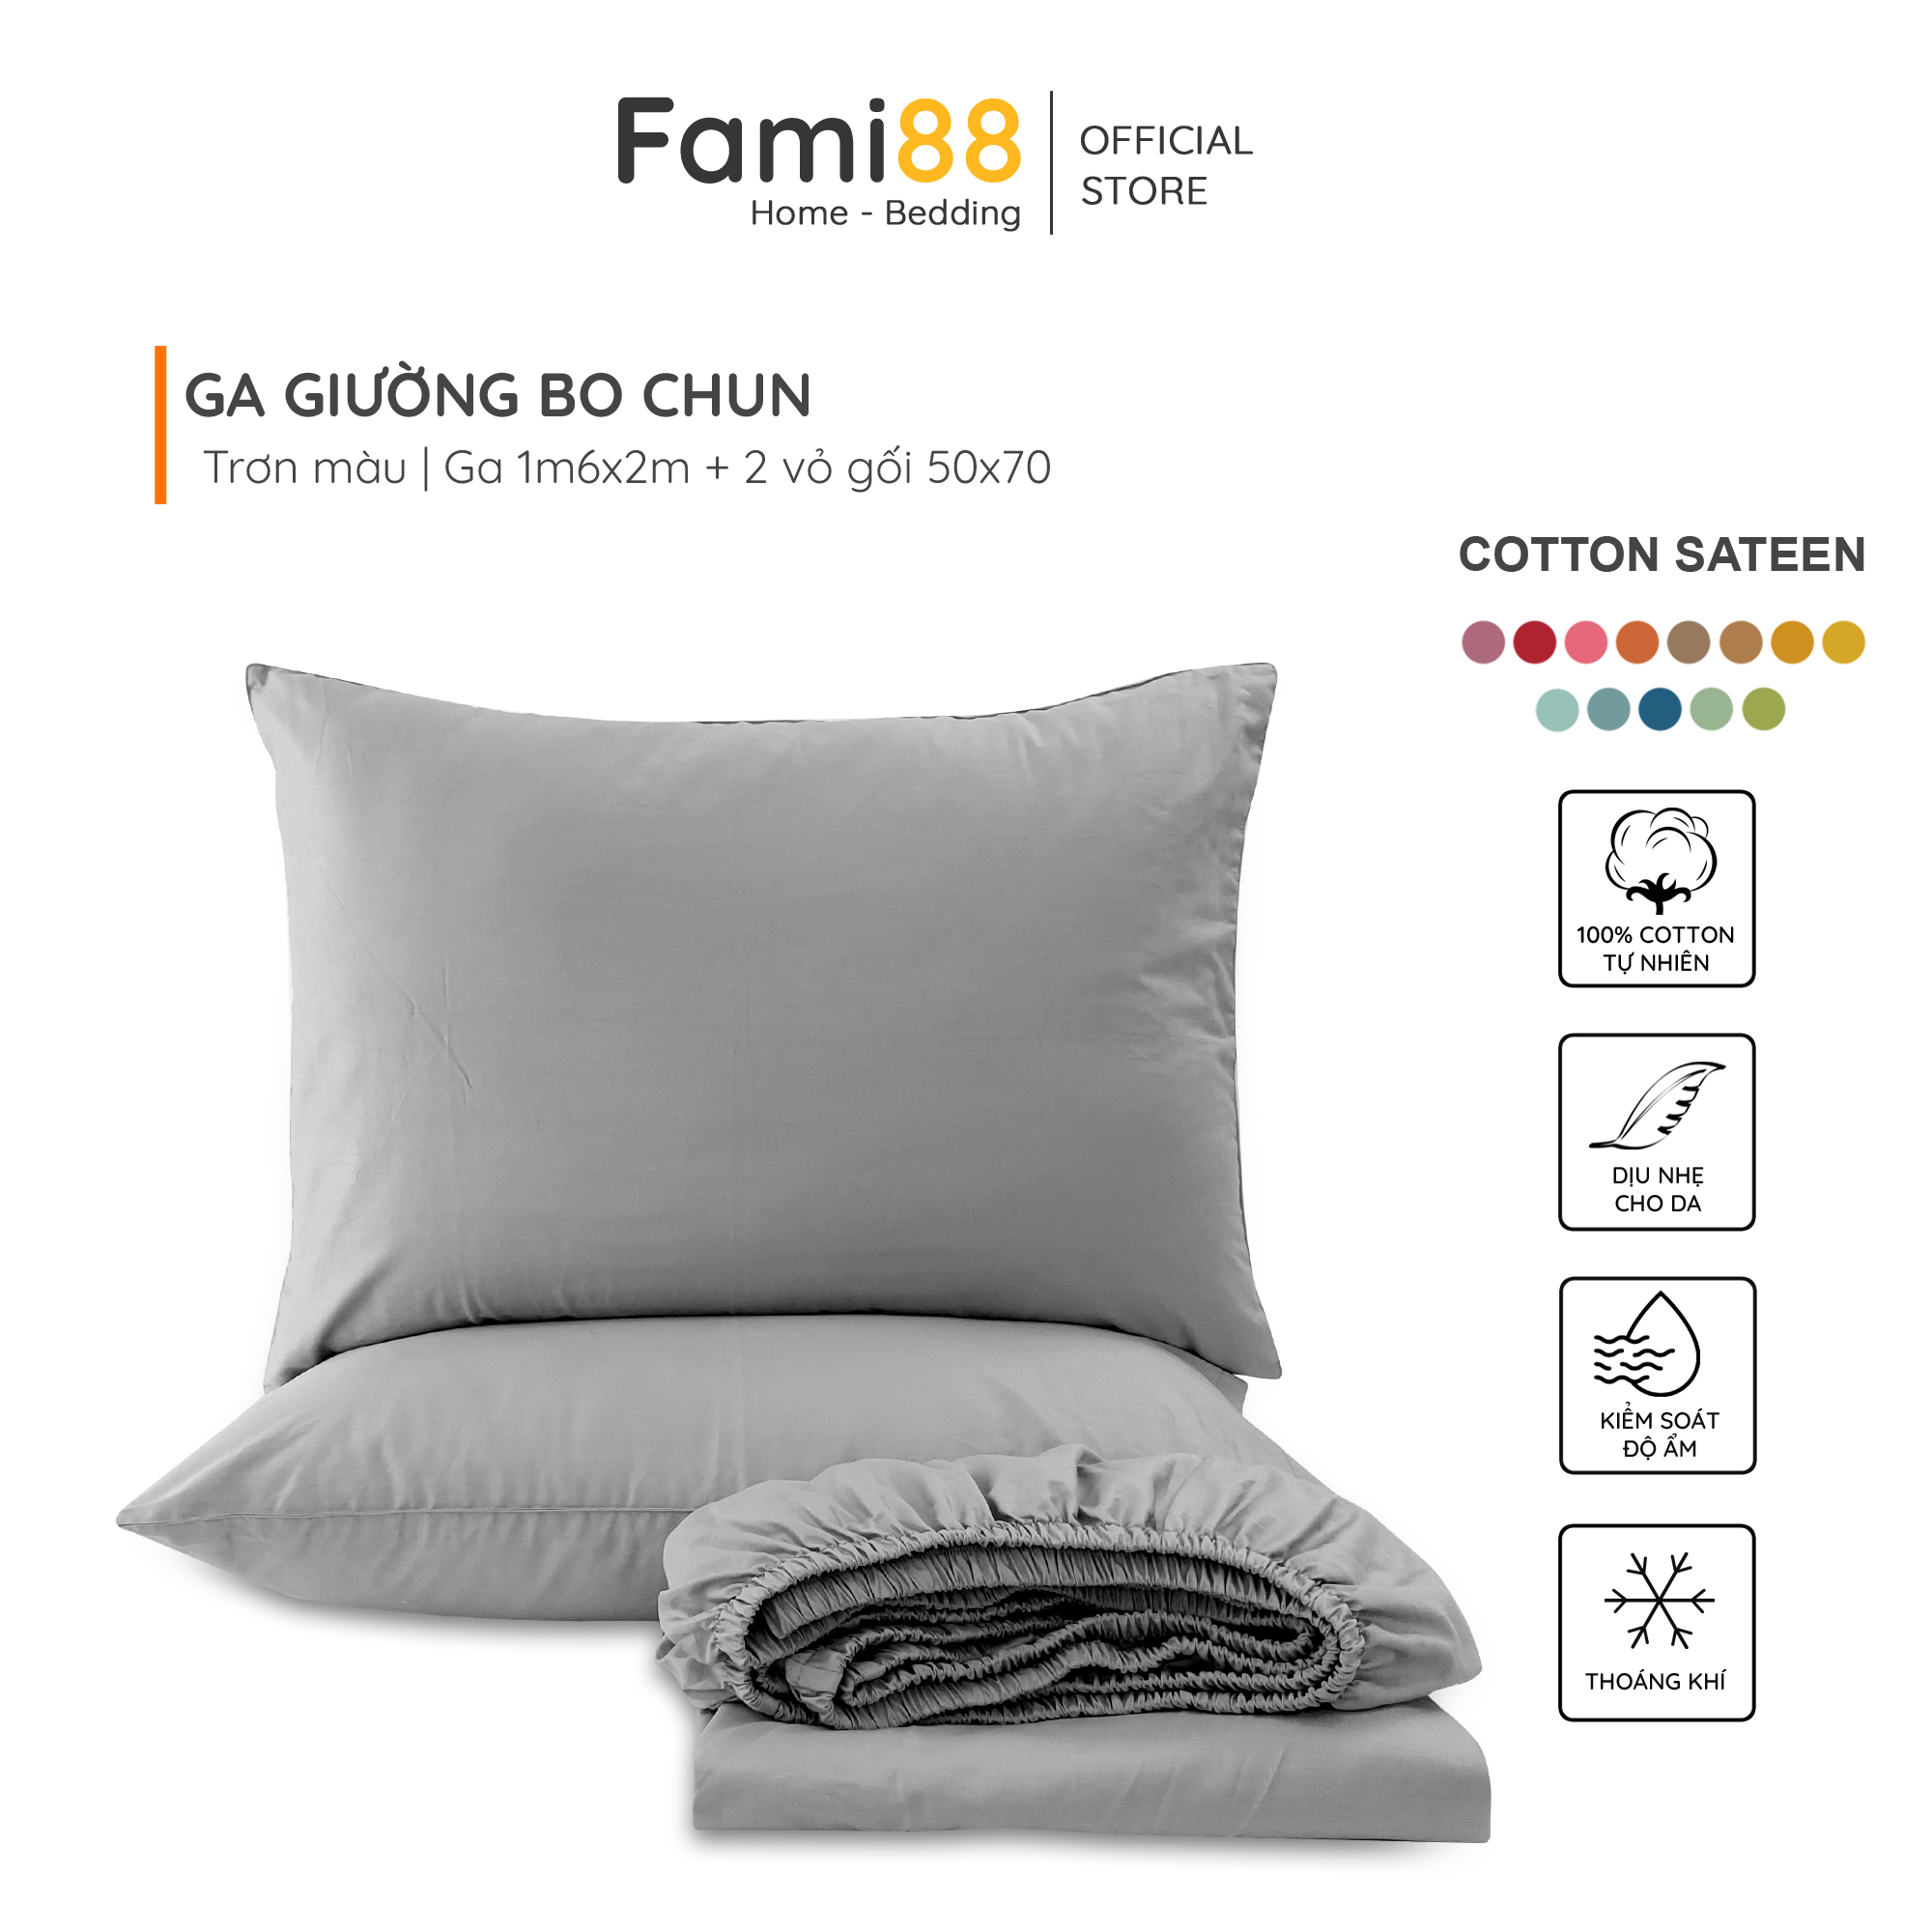 Ga giường 1m6x2m Cotton Satin Fami88 Bedding trơn màu